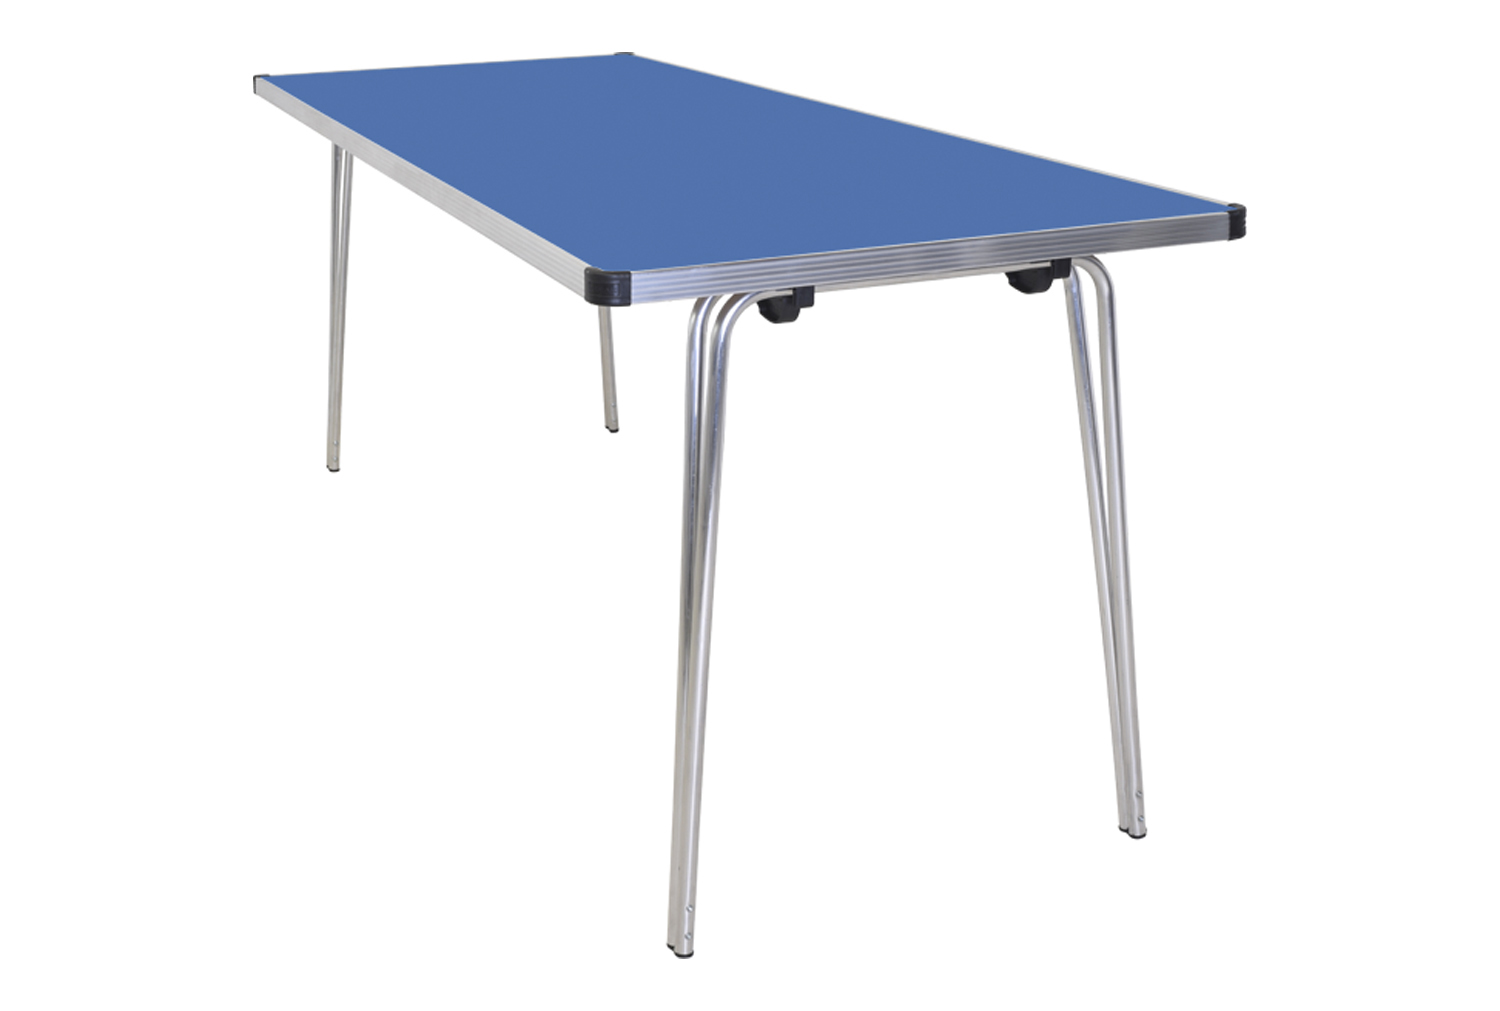 Gopak Contour Folding Table, 122wx69d (cm), Azure Blue